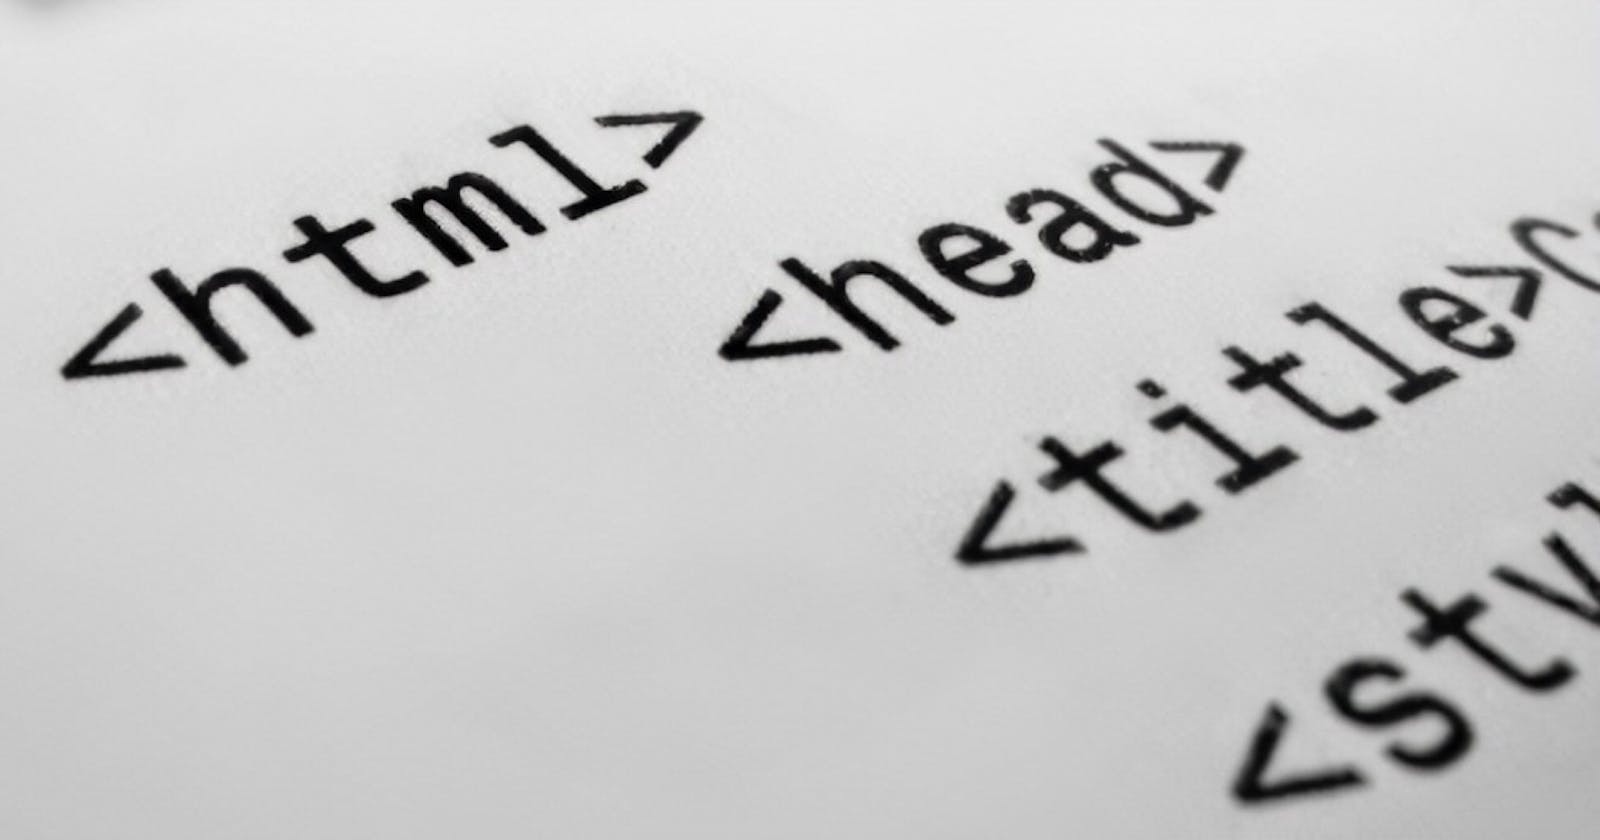 Basics of HTML (Hypertext Markup Language):